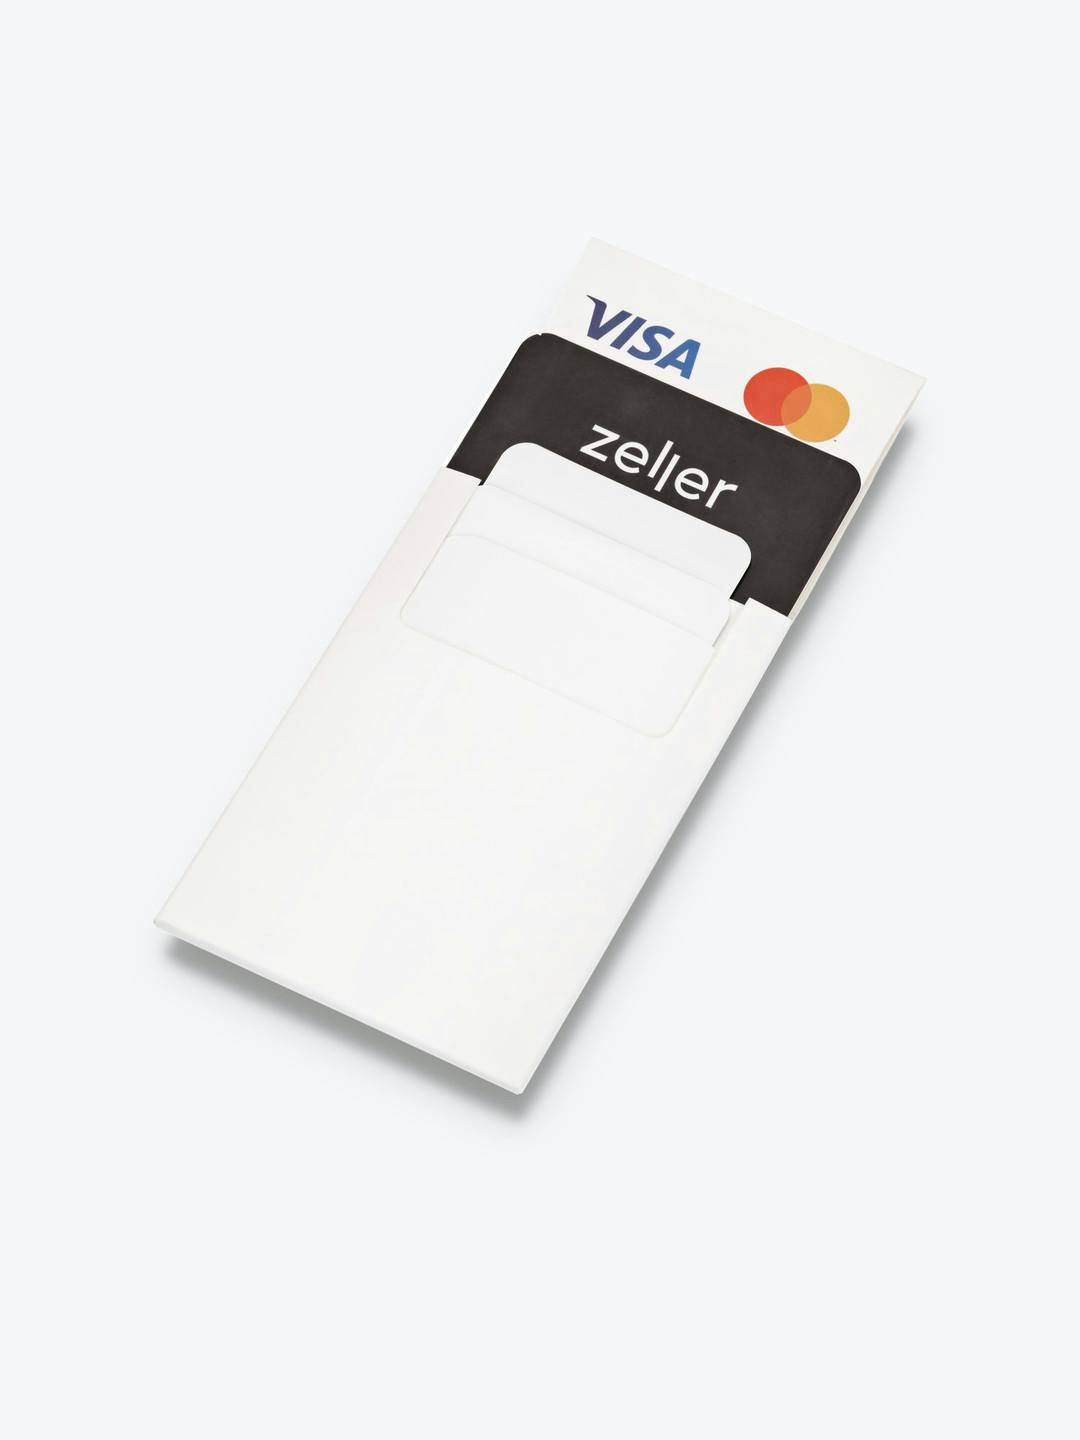 Zeller Card Payment Marketing Kit